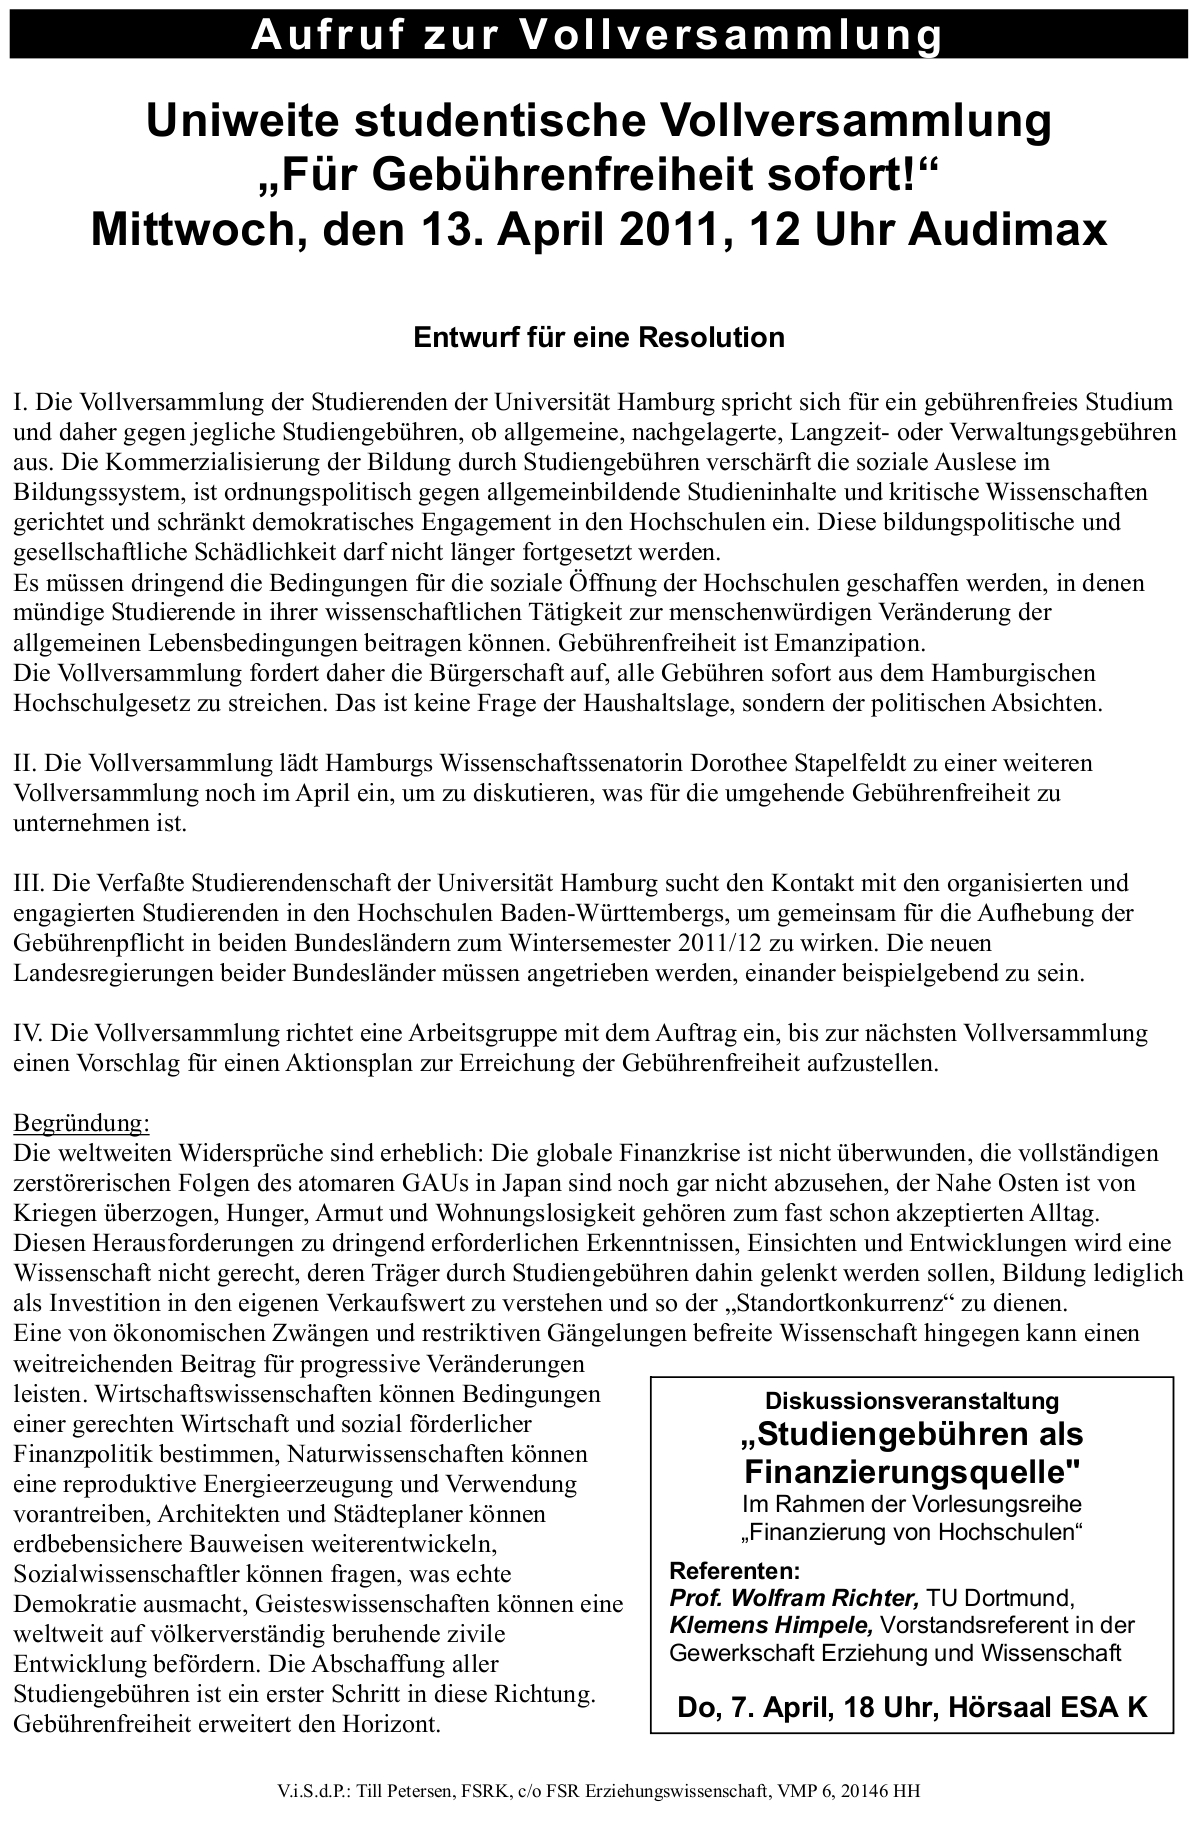 Resolutionsentwurf Vollversammlung 13.04.2011 12 Uhr Audimax Uni Hamburg